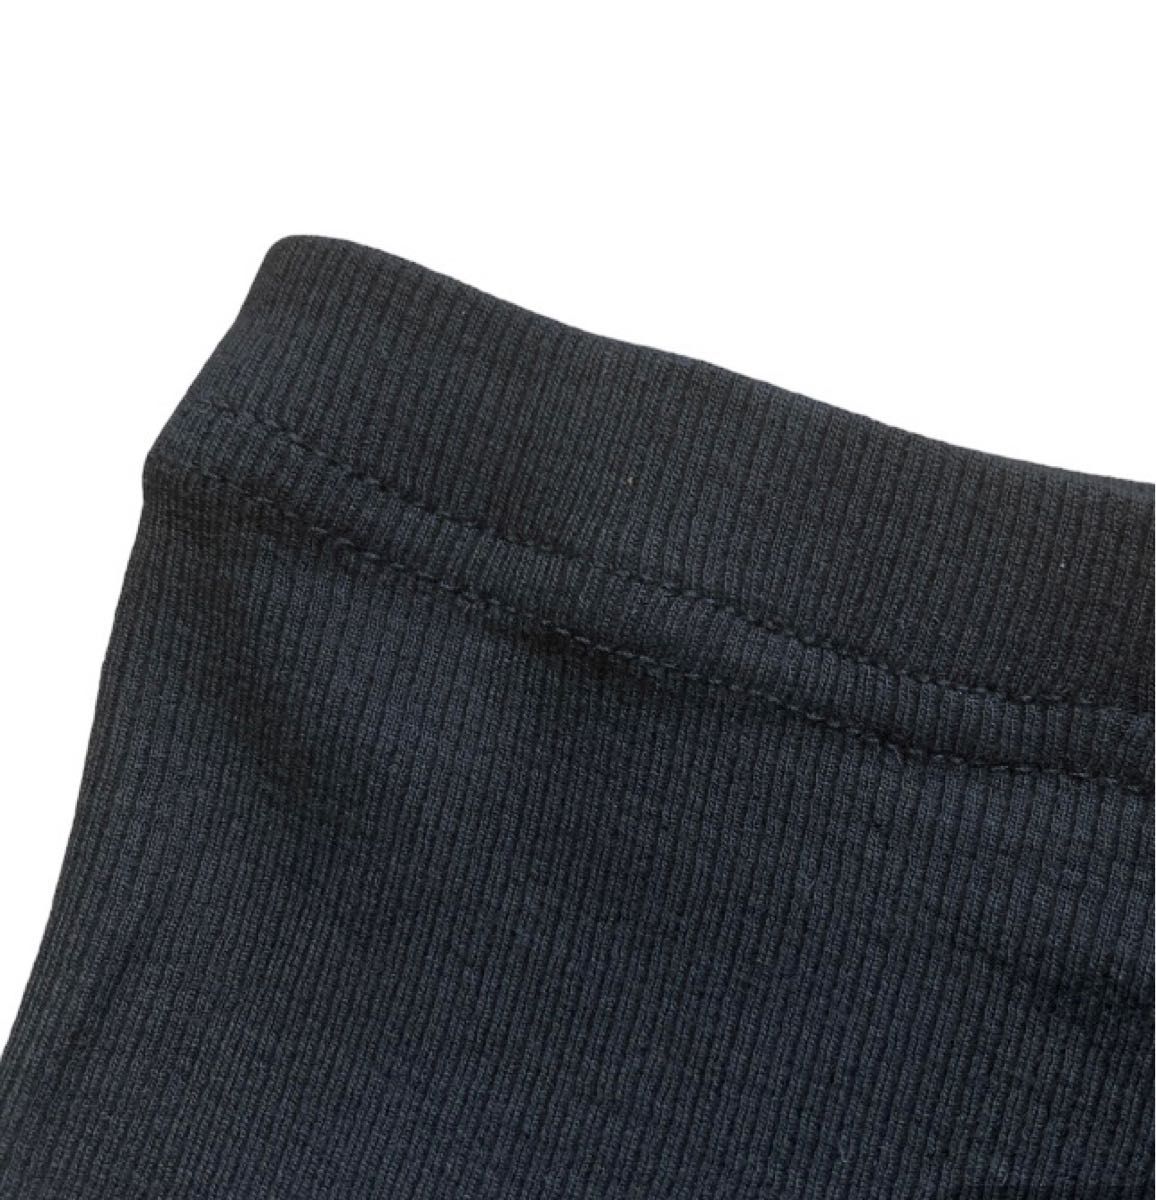 レギンス 100㎝ 黒 スパッツ リブ 伸縮性抜群 動きやすい パンツ ブラック